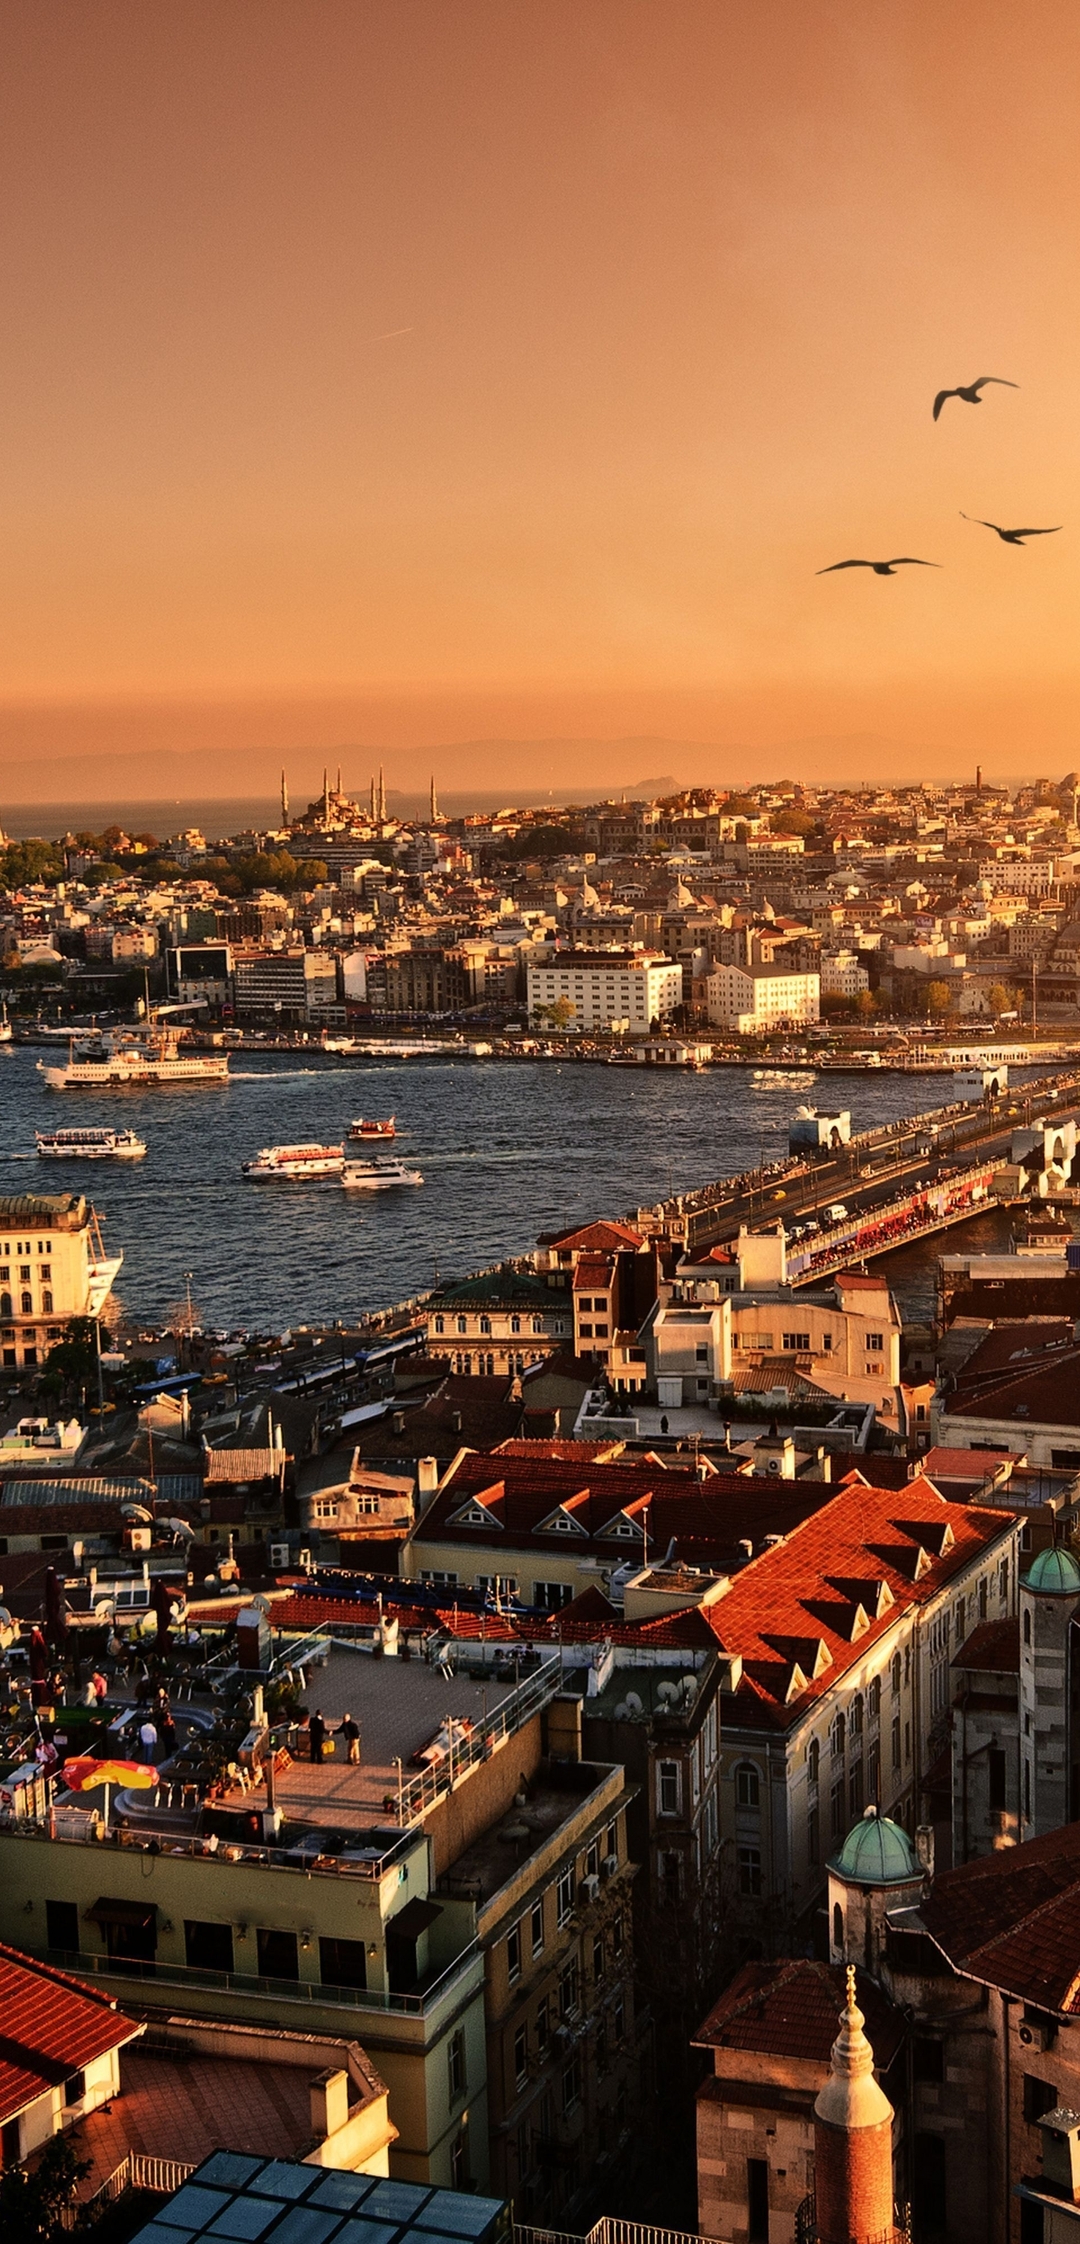 Картинка: Турция, Стамбул, пейзаж, город, река, Галатский мост, вечер, закат, солнце, птицы, стая